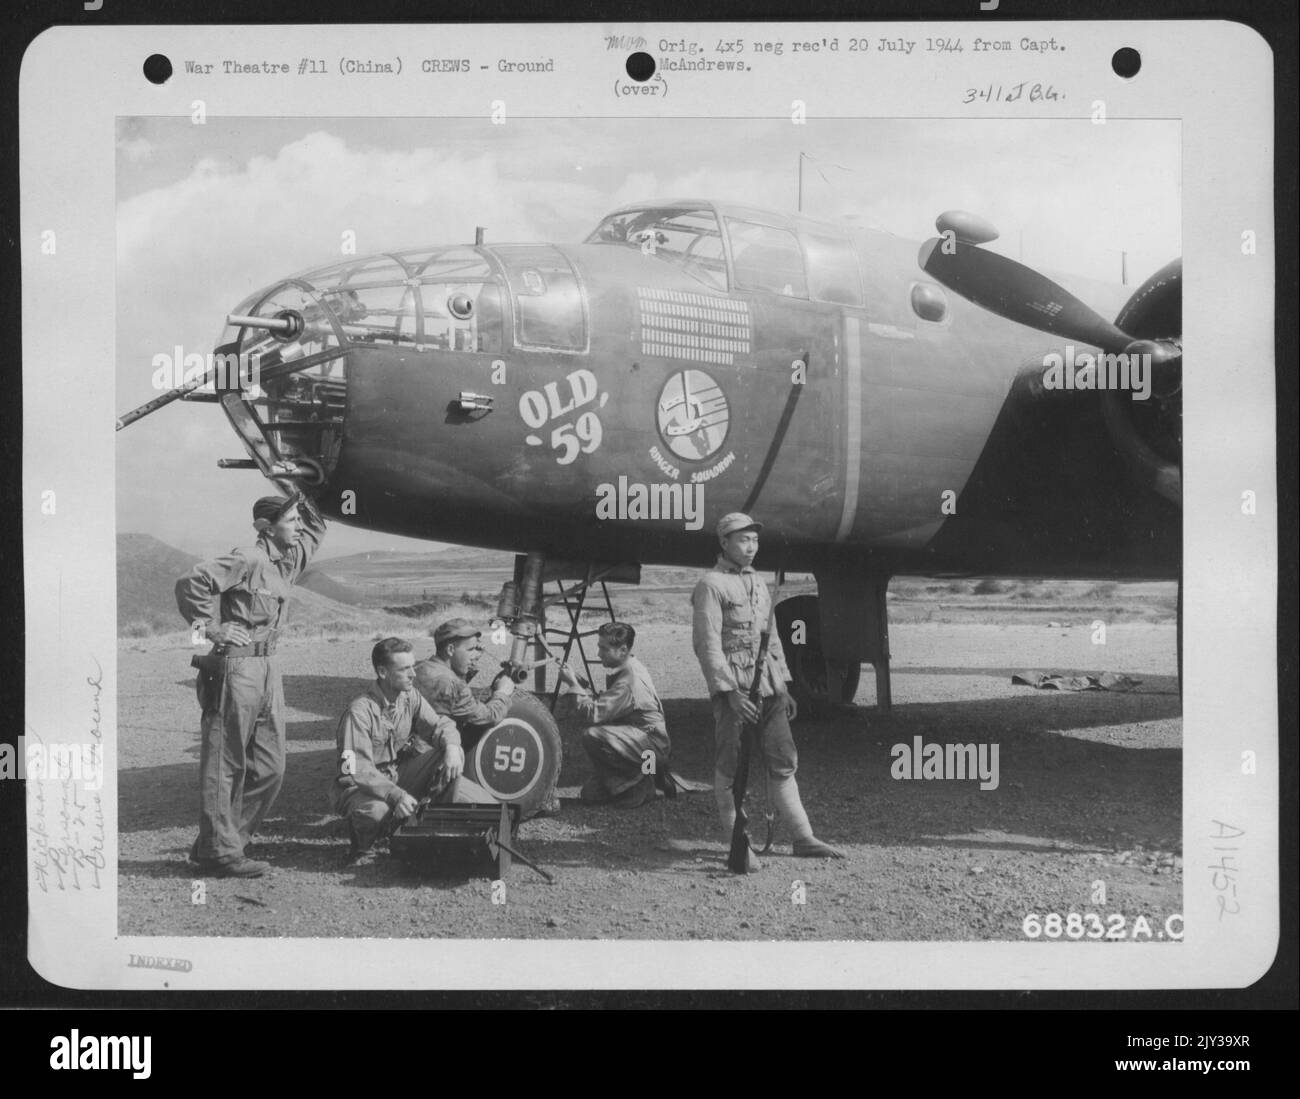 Gli uomini che mantengono il volo in Cina sono responsabili di gran parte del successo degli aerei da combattimento, come il Nord America B-25 "Old 59". Da sinistra a destra: SGT. Lawrence Q. Lemmon di Memphis, Tennessee, Armorer; Sgt. Williiam W. Bryan di Hopkinsville, N.Y. Foto Stock